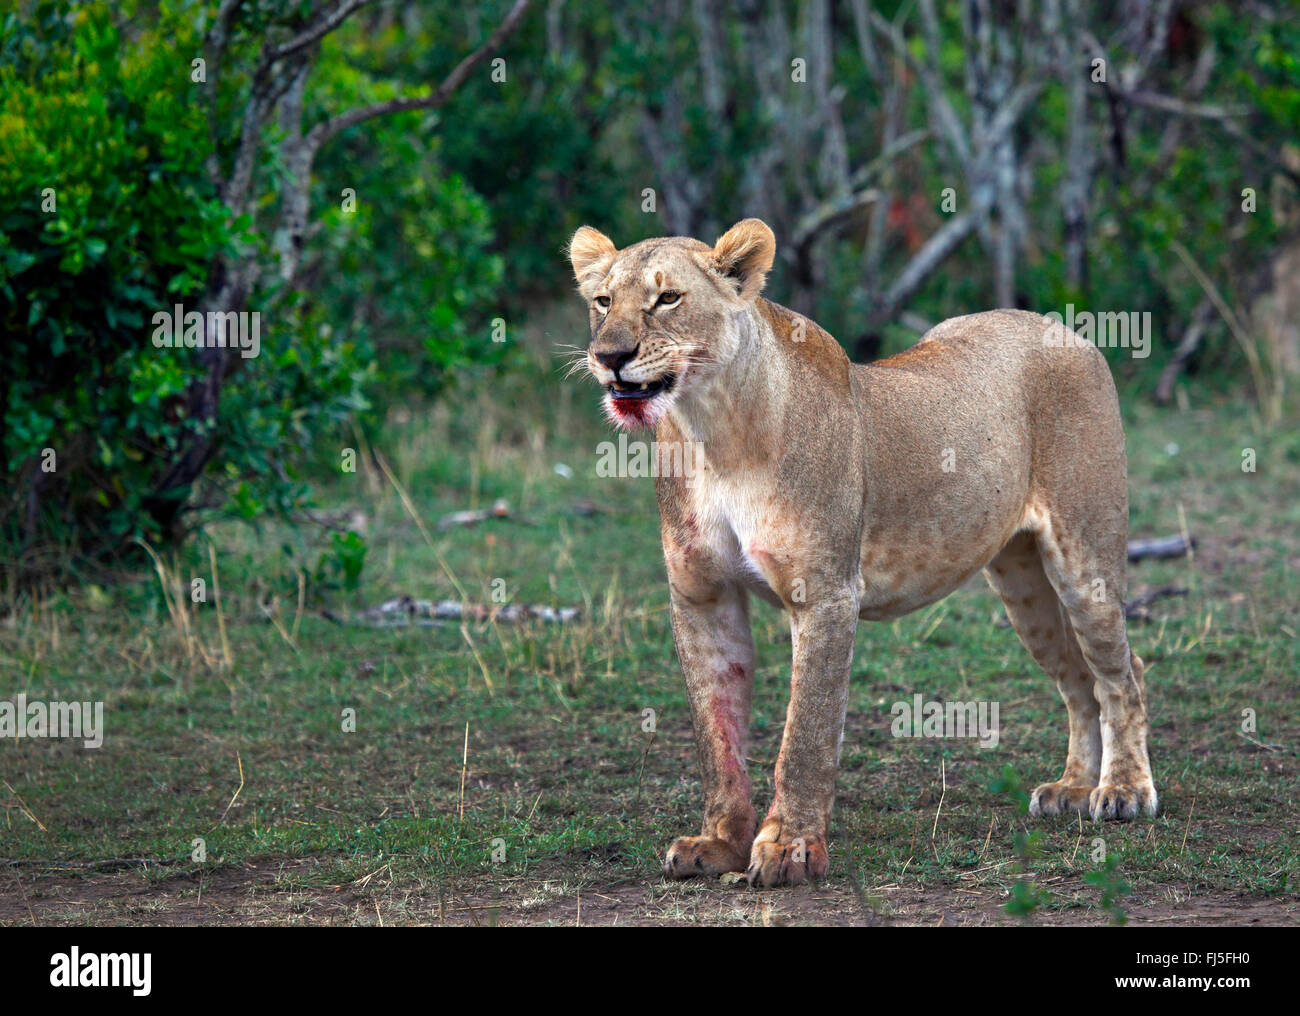 Lion (Panthera leo), femme avec du sang de la bouche, Kenya, Masai Mara National Park Banque D'Images